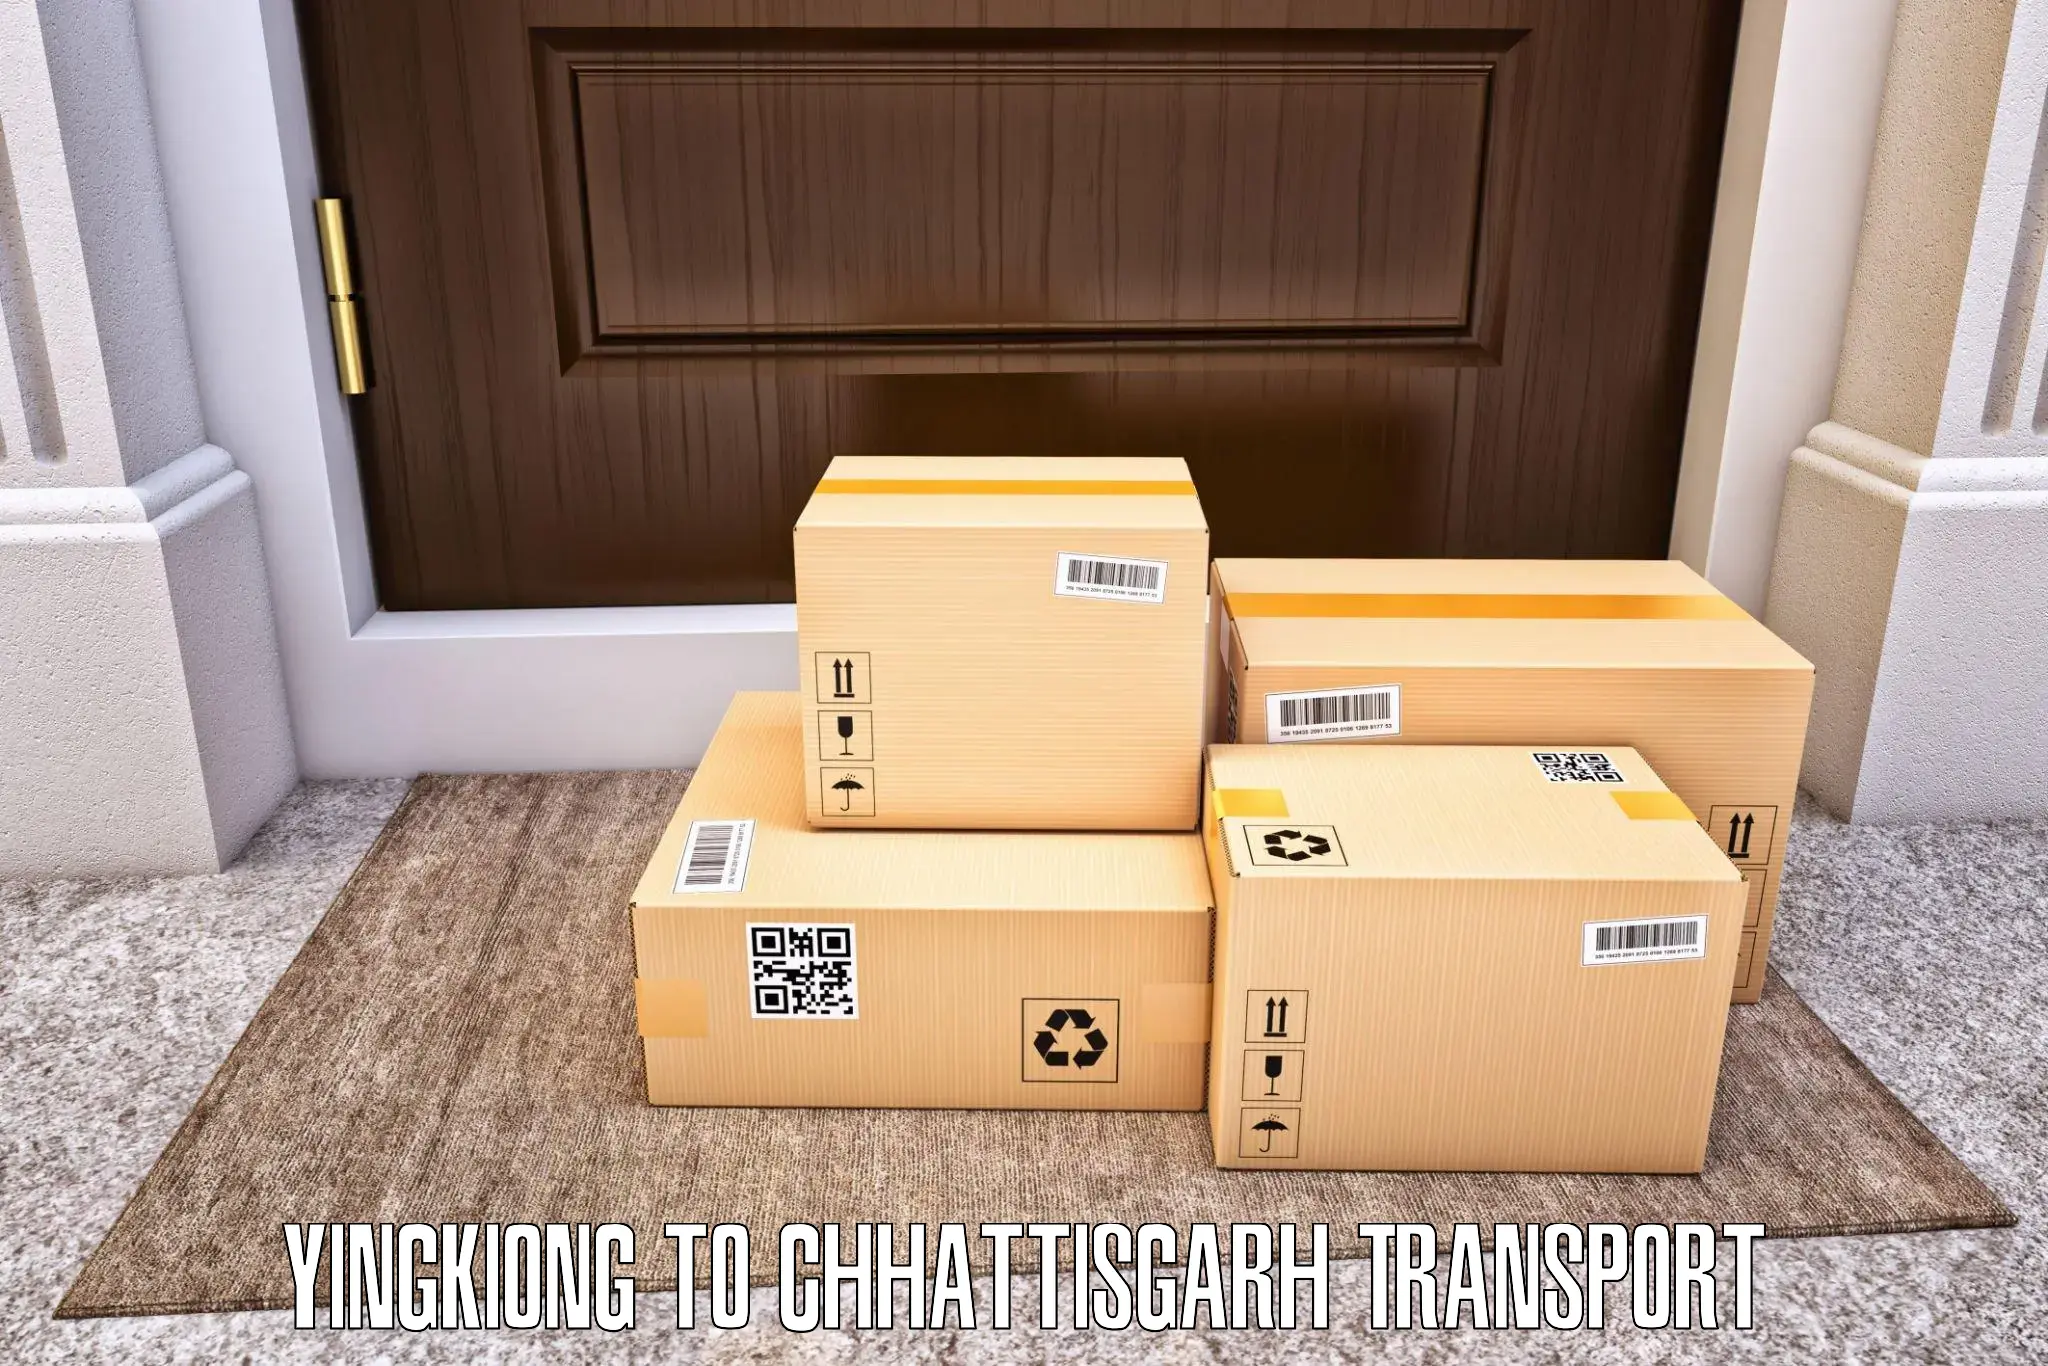 Transport in sharing Yingkiong to Chhattisgarh